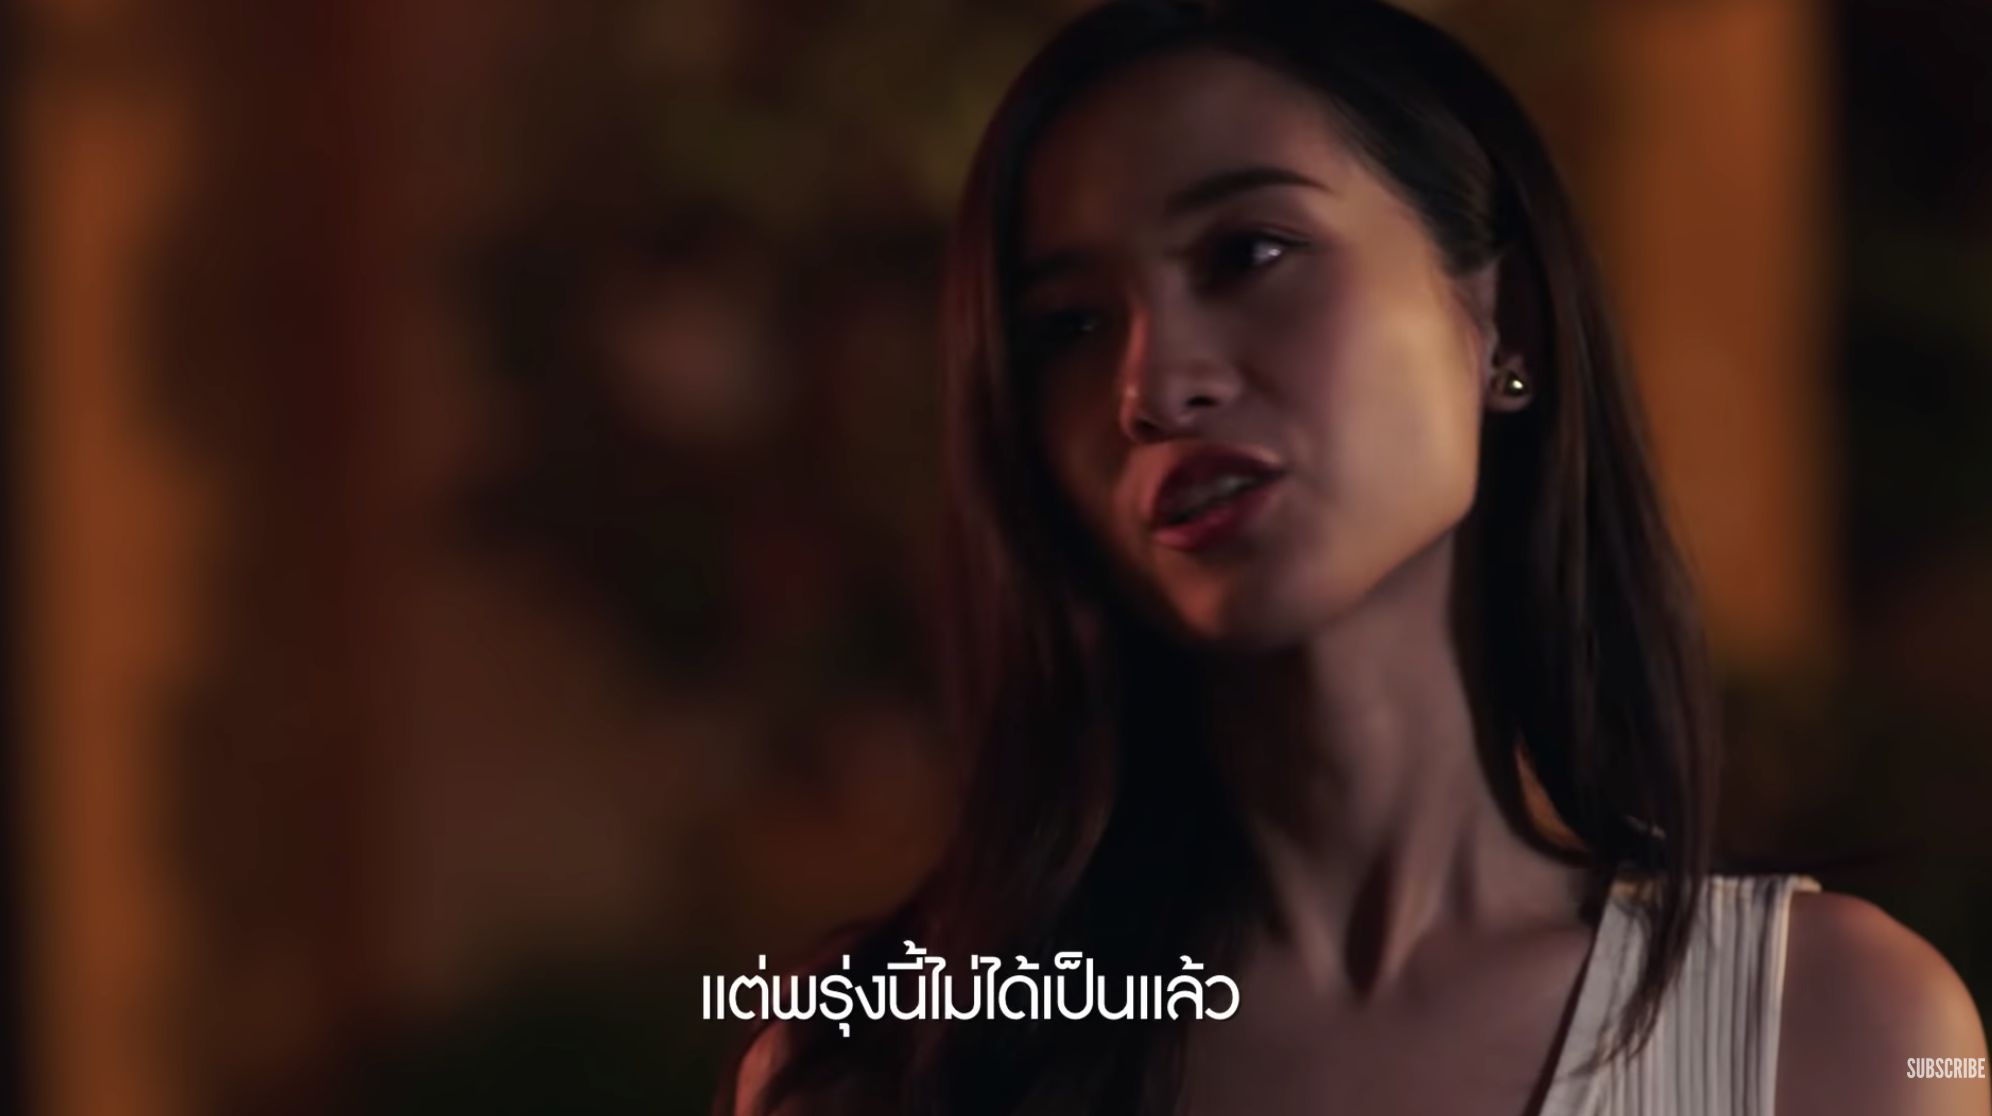 vPhim Wolf (Trò Chơi Săn Người) Thái Lan hút khán giả ngay khi lên sóng (5)